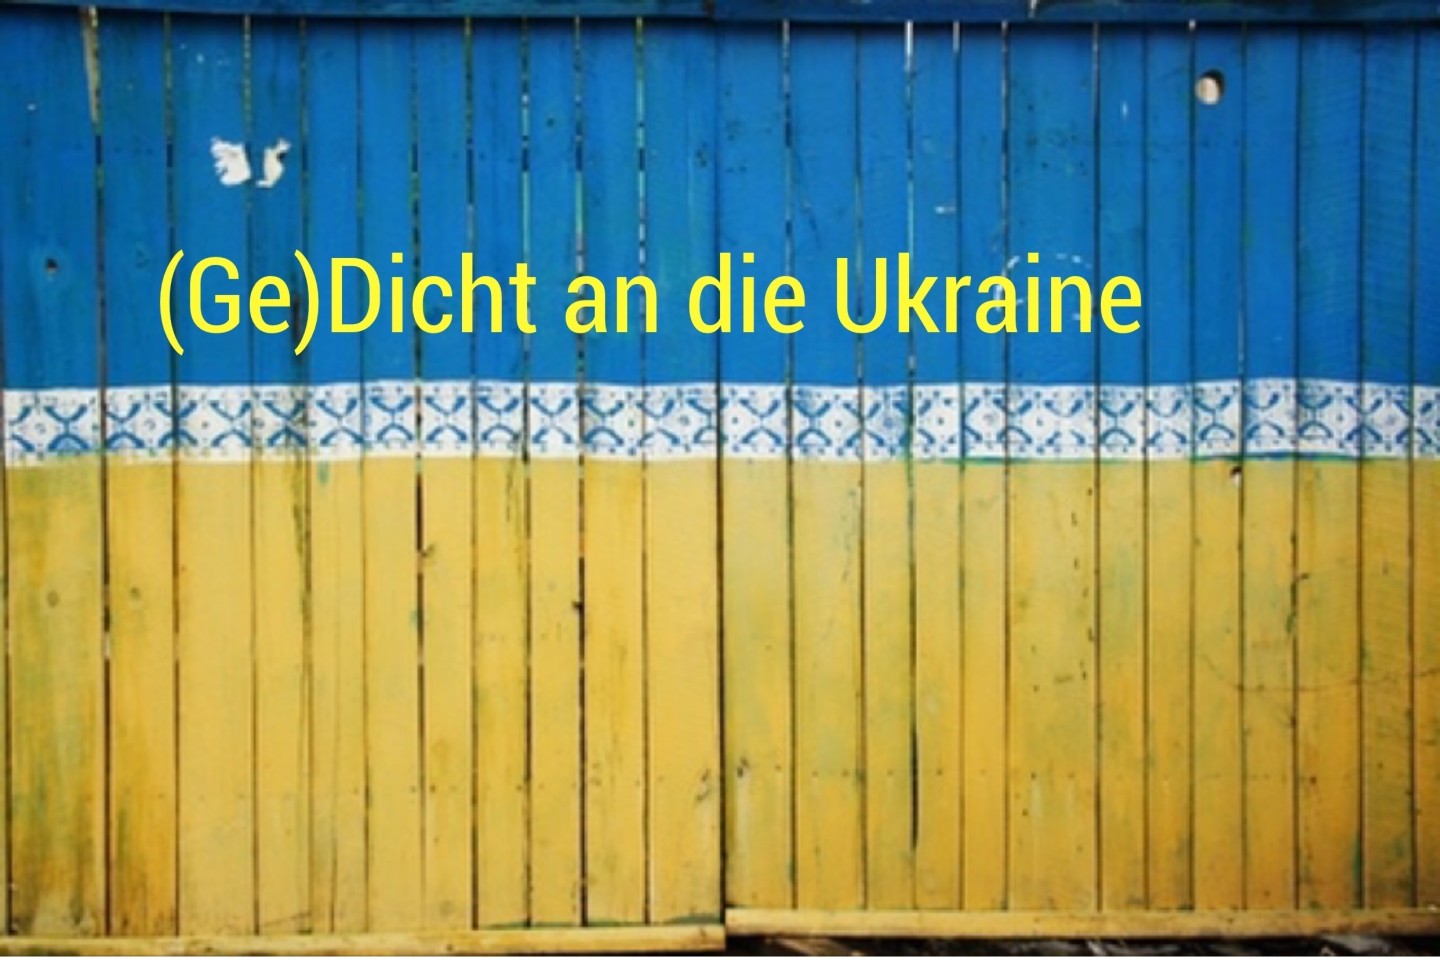 Gedicht an die Ukraine